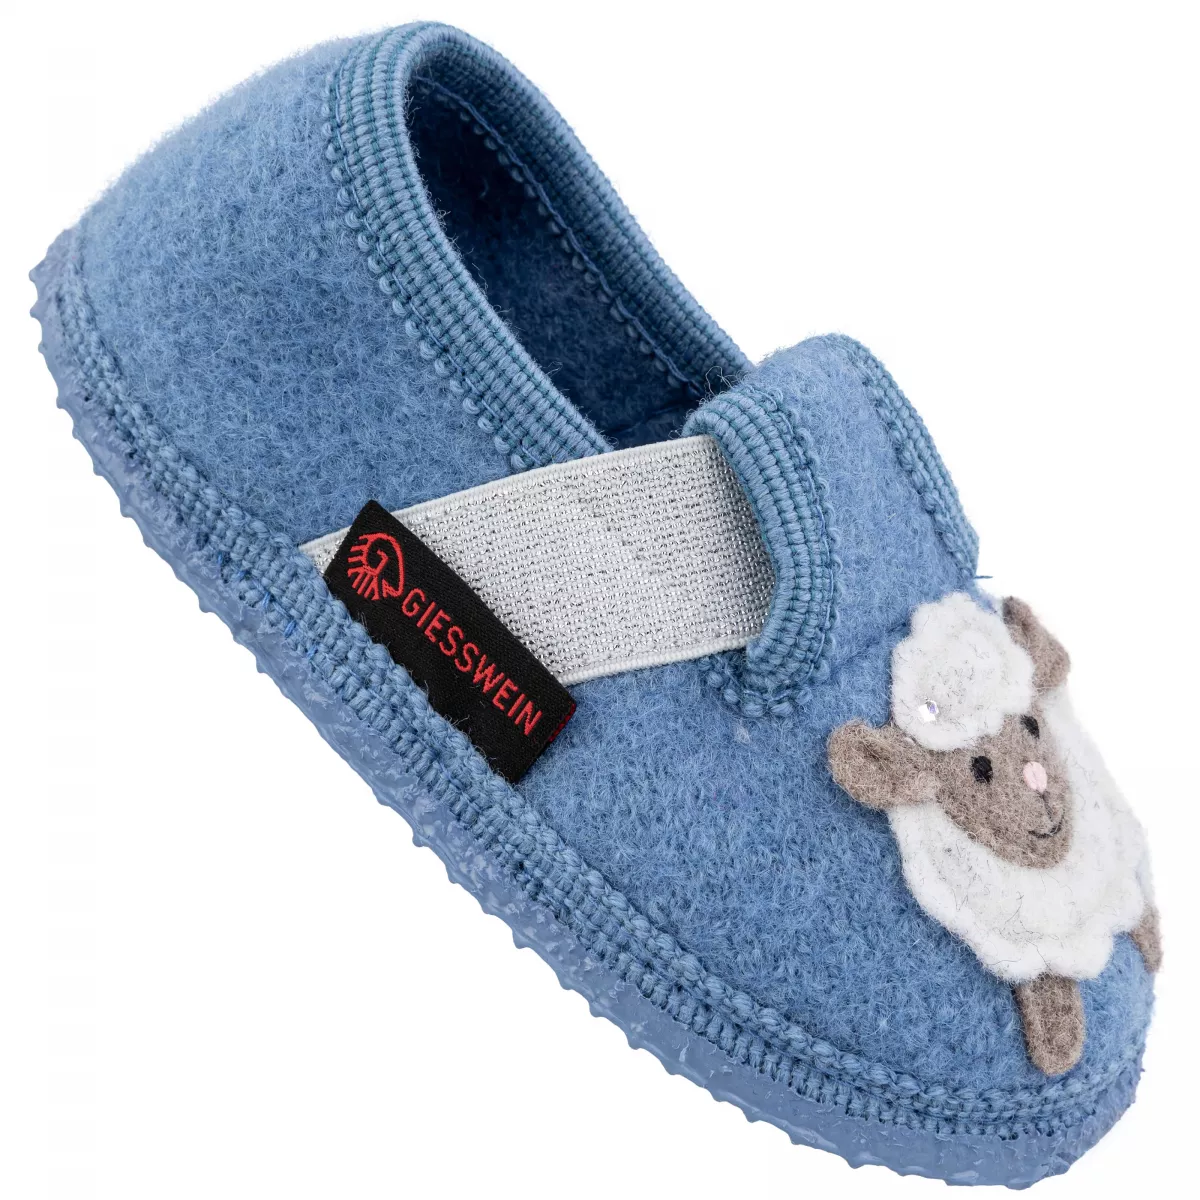 Papuci de casa din lana, model Trendlburg, albastru 28